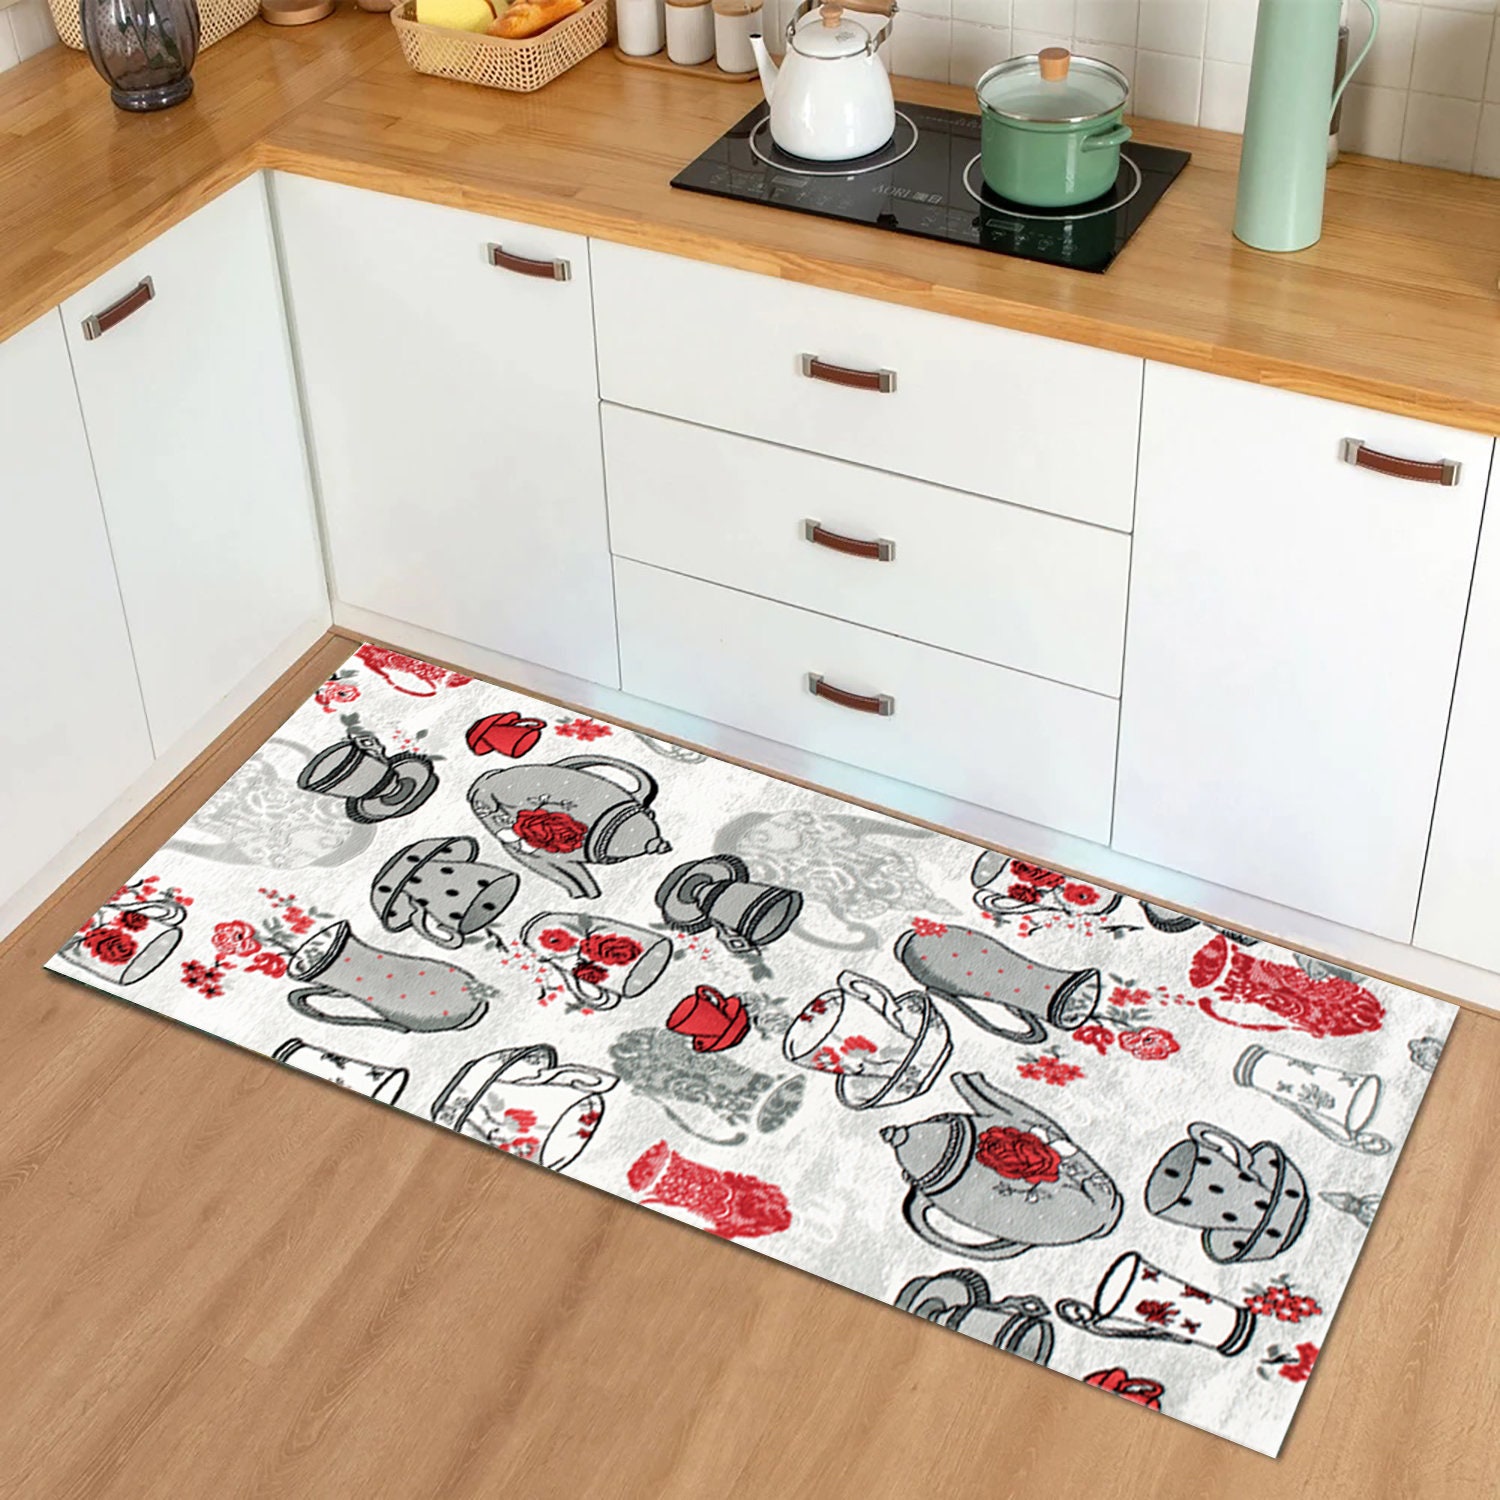 Dolbov Djtal stampa base antiscivolo lavabile in lavatrice tappeto ovale  grigio, tappeto da cucina tappeto soggiorno tappeto - AliExpress